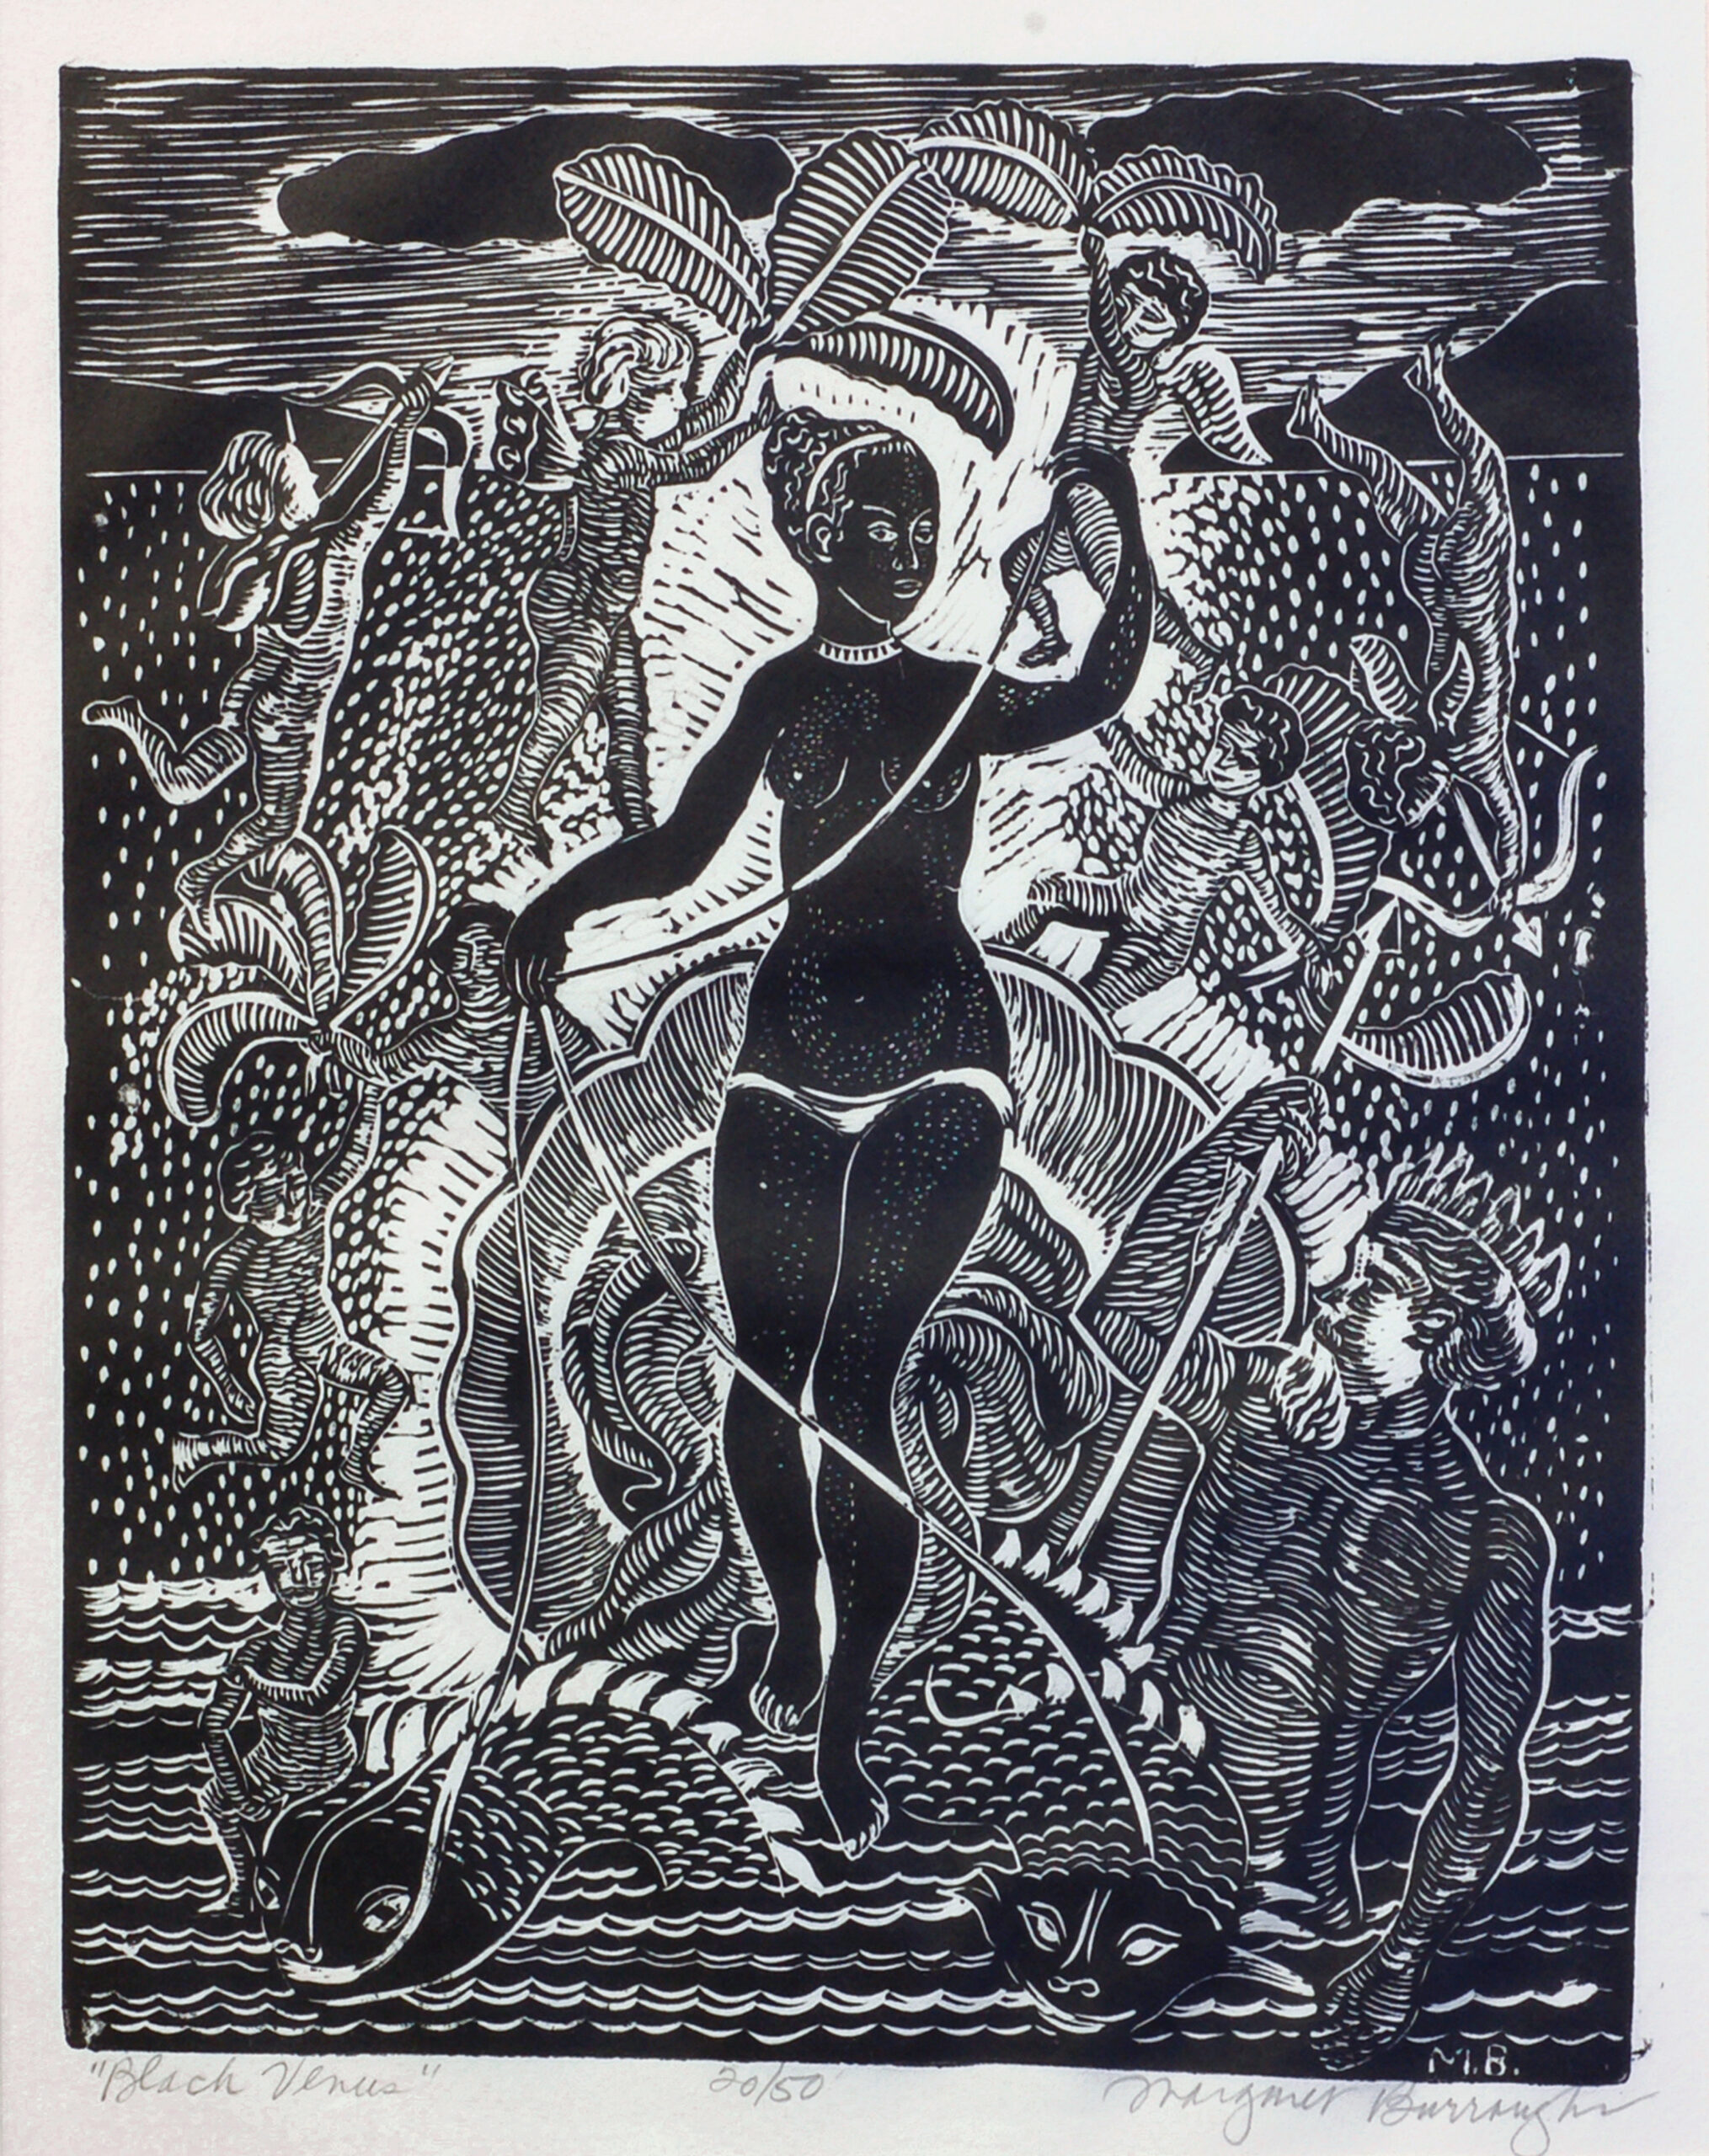 Margaret Burroughs, Black Venus, 1957. Woodcut